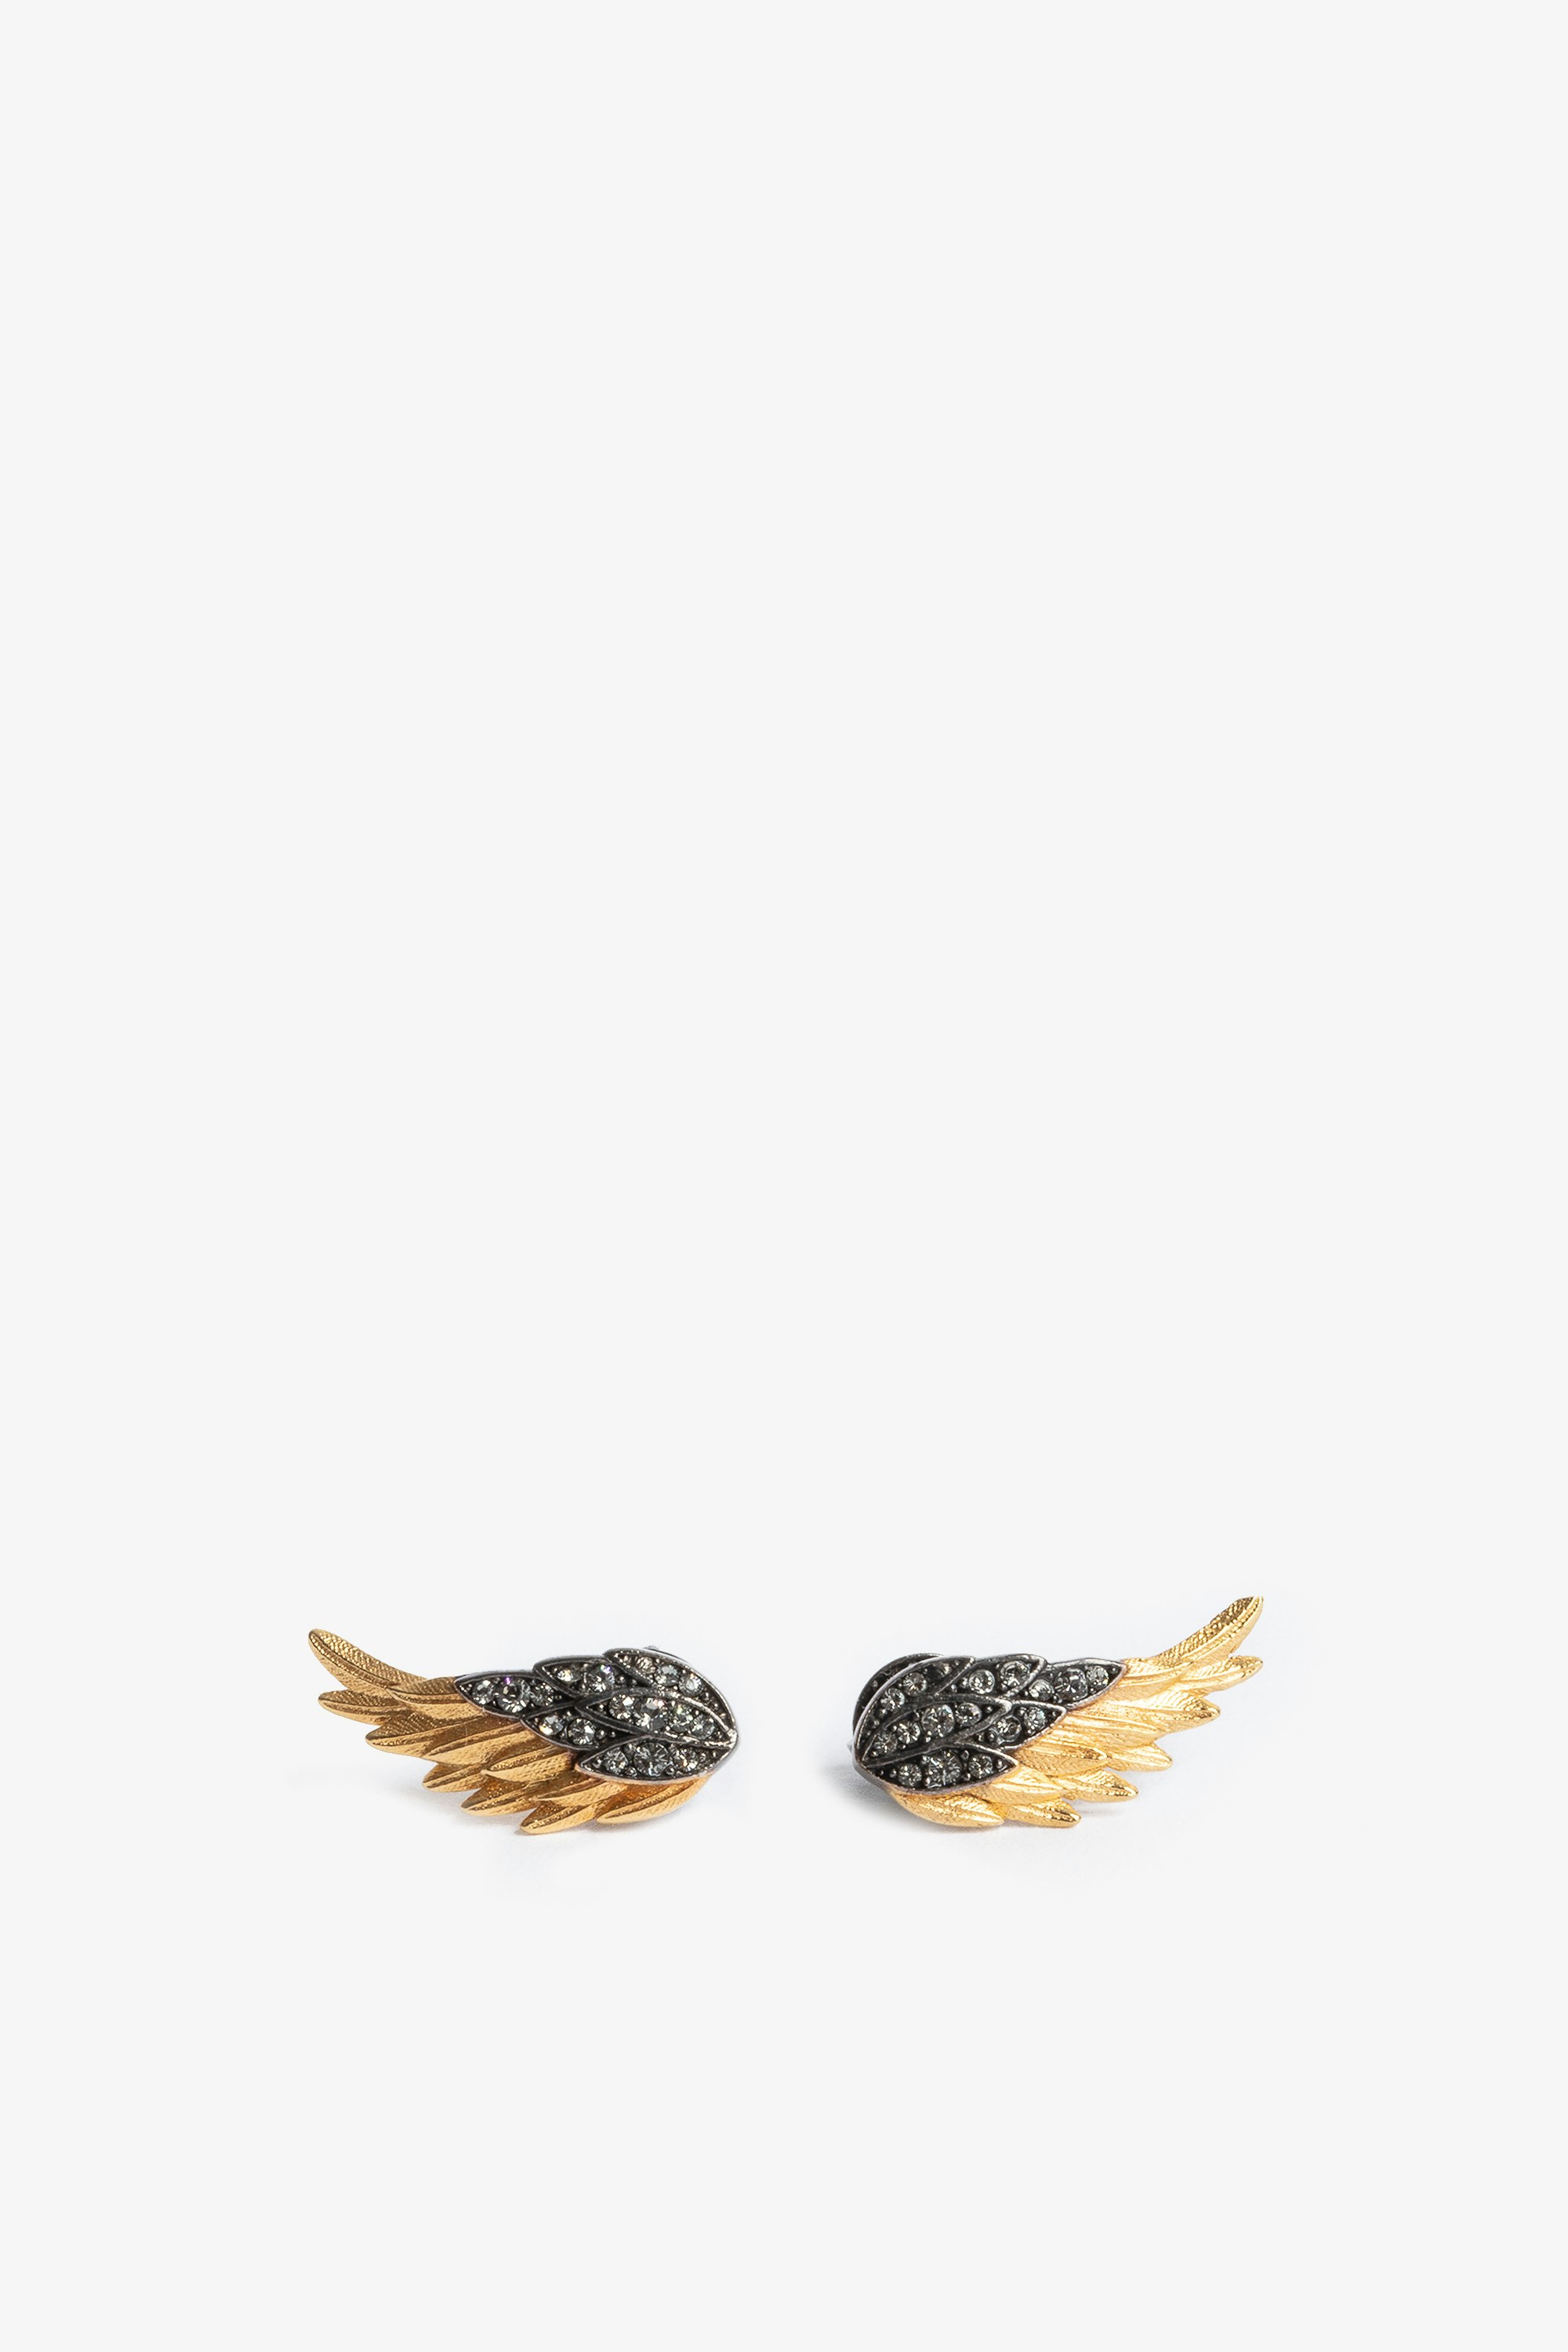 Boucles D'Oreilles Rock Feather - Boucles d'oreilles en forme d'ailes en laiton noirci et doré serti de cristaux.